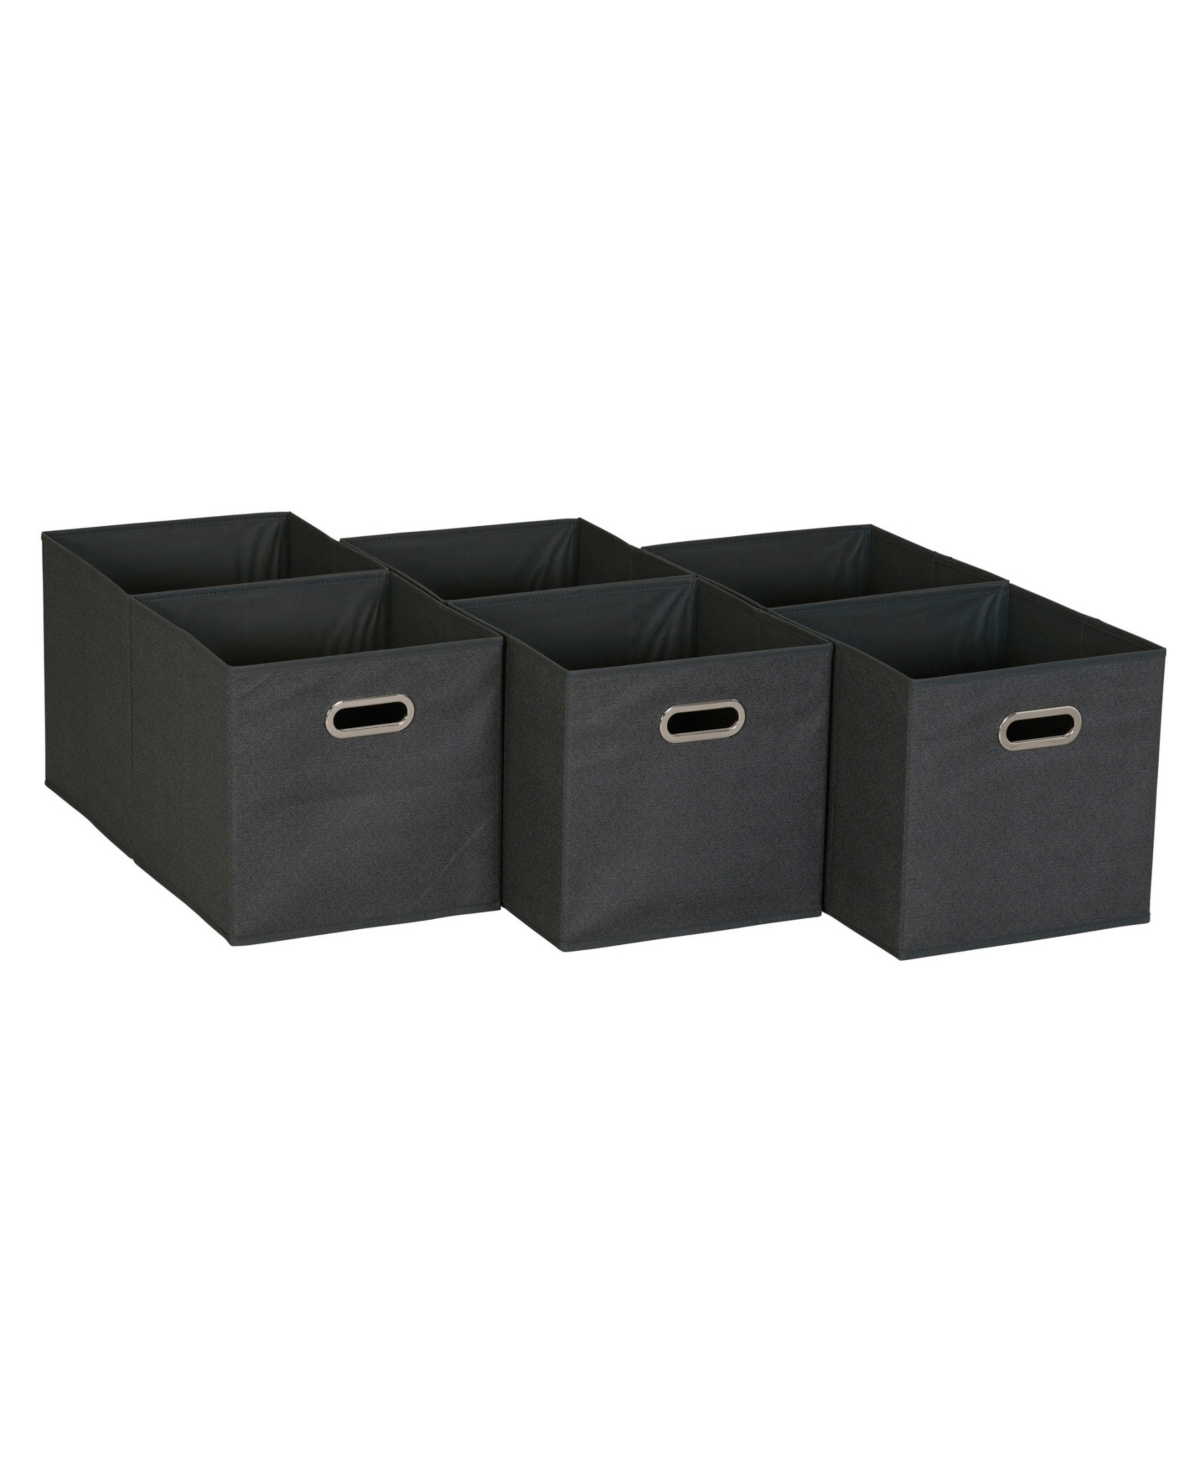 6 ct Open Fabric Cube Storage Bins - Multi Color